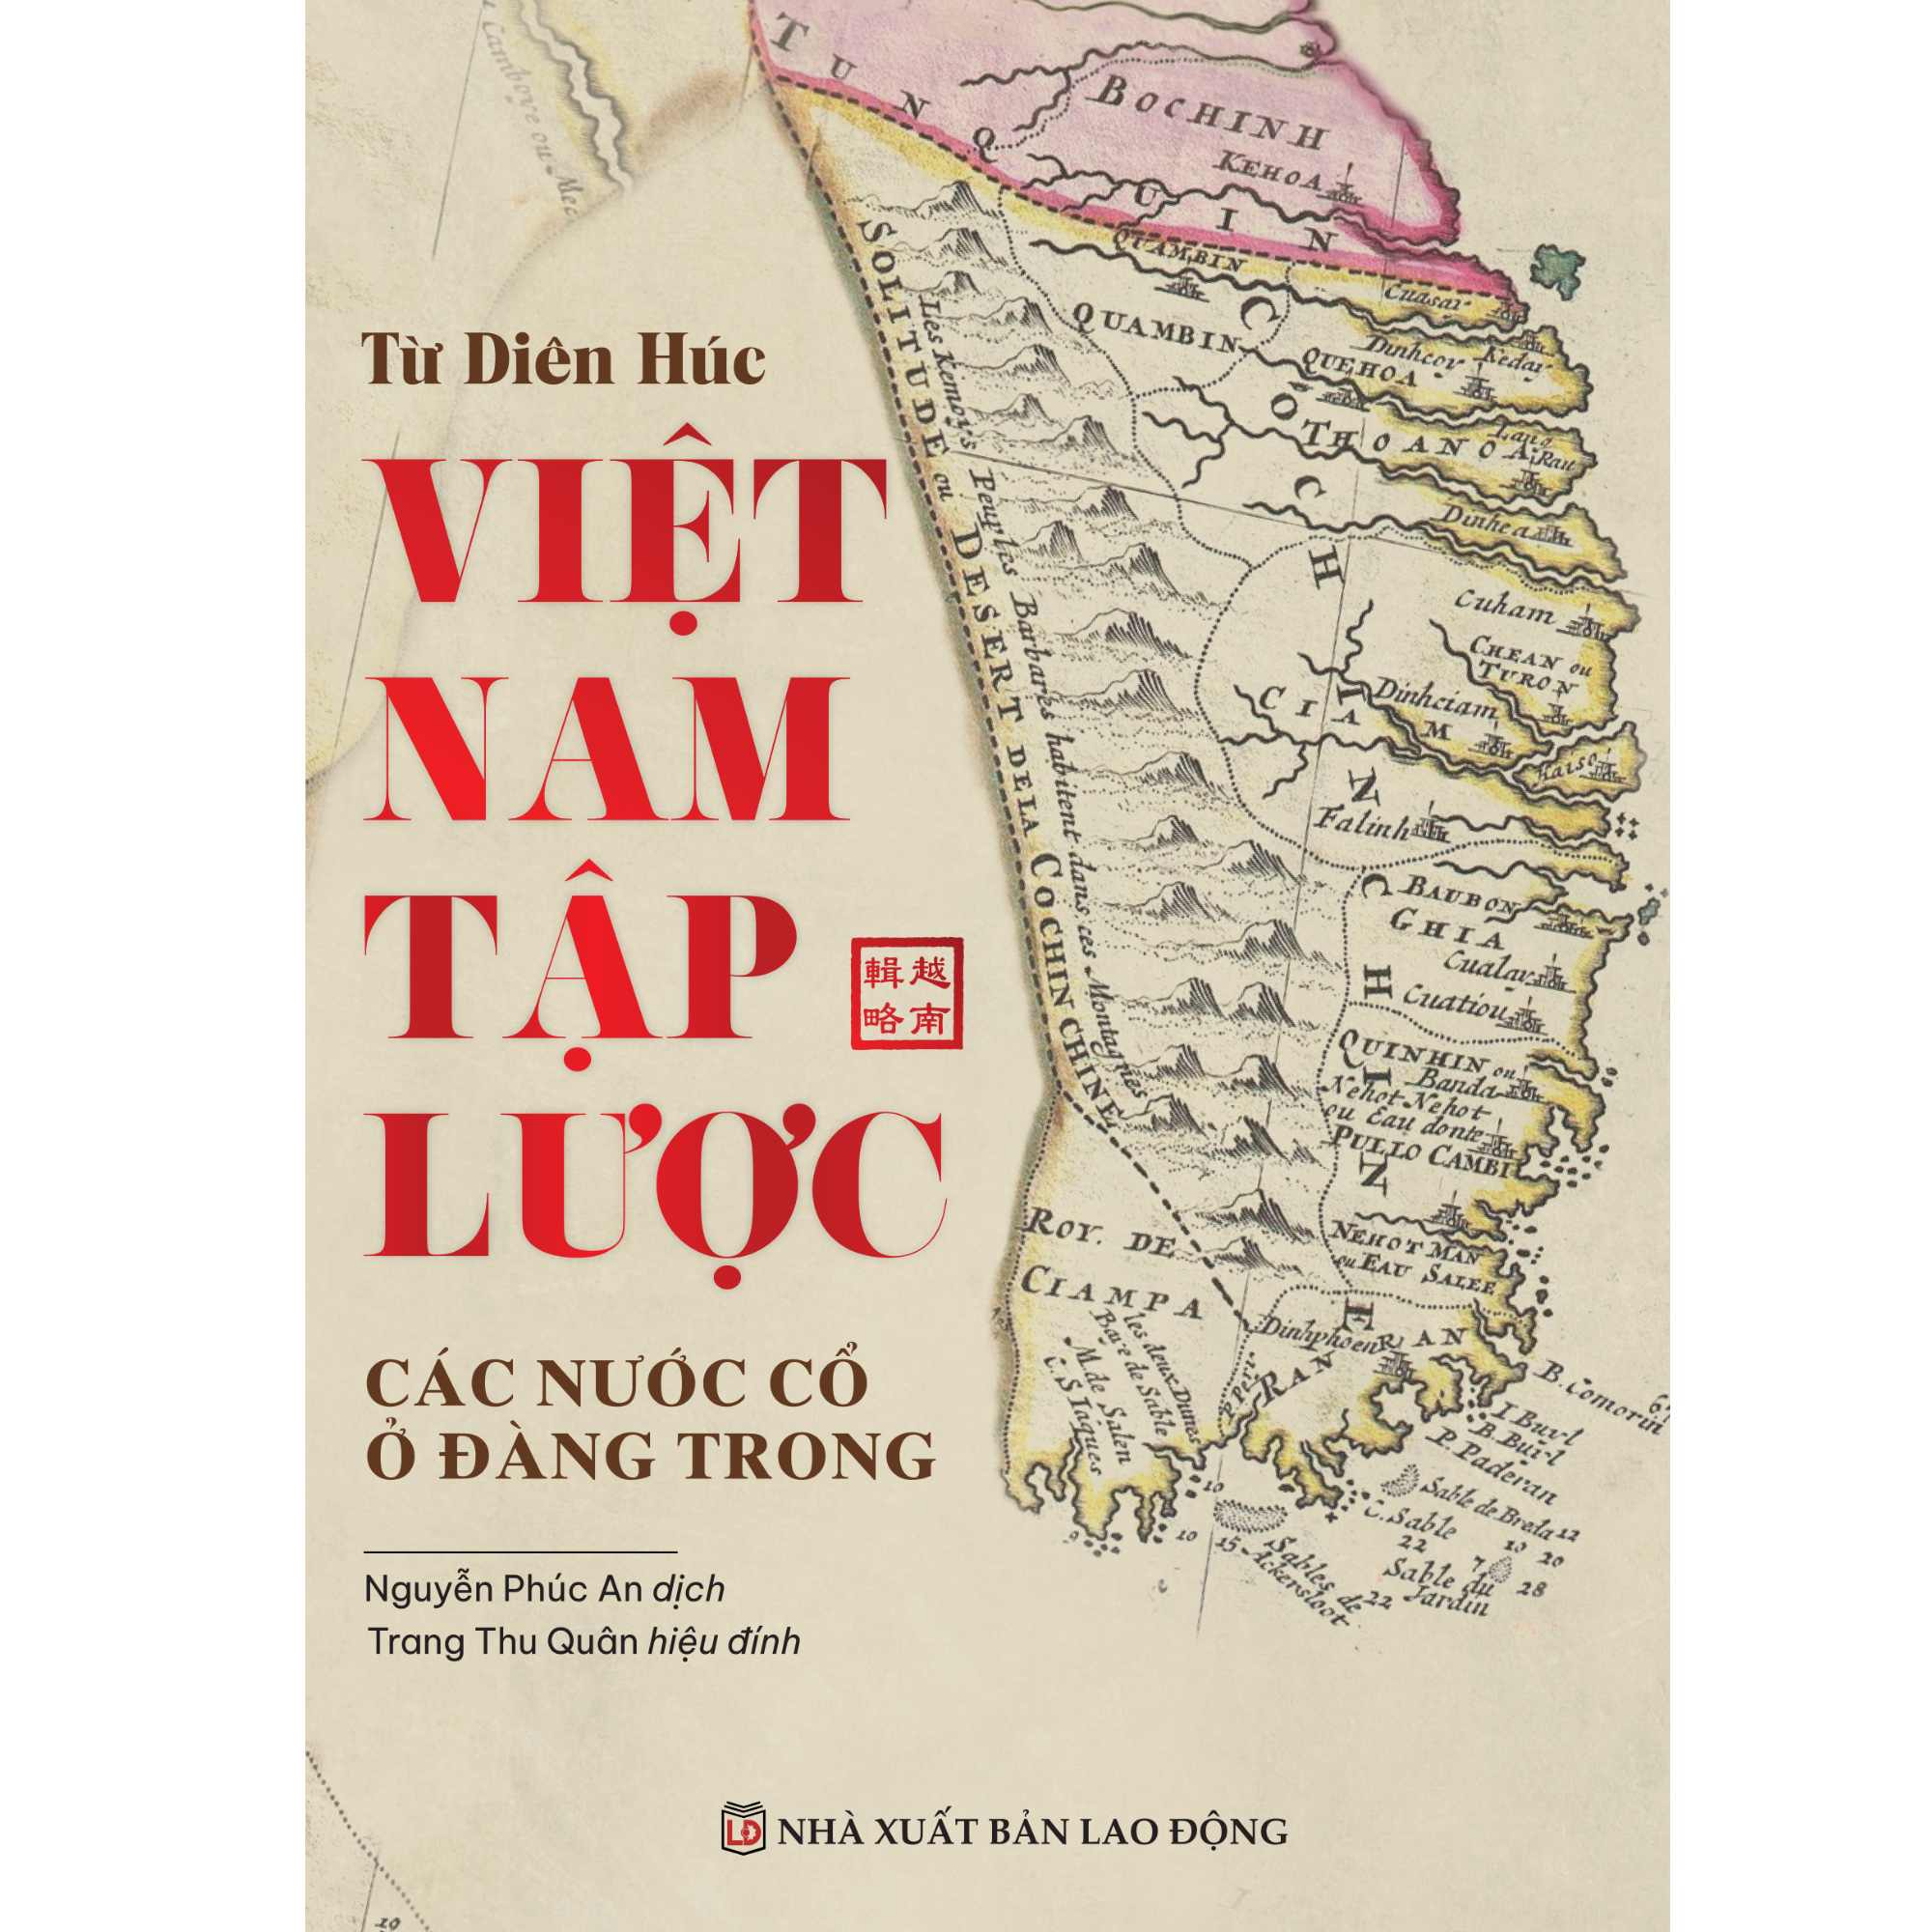 Việt Nam Tập Lược - Các Nước Cổ Ở Đàng Trong (TTT)